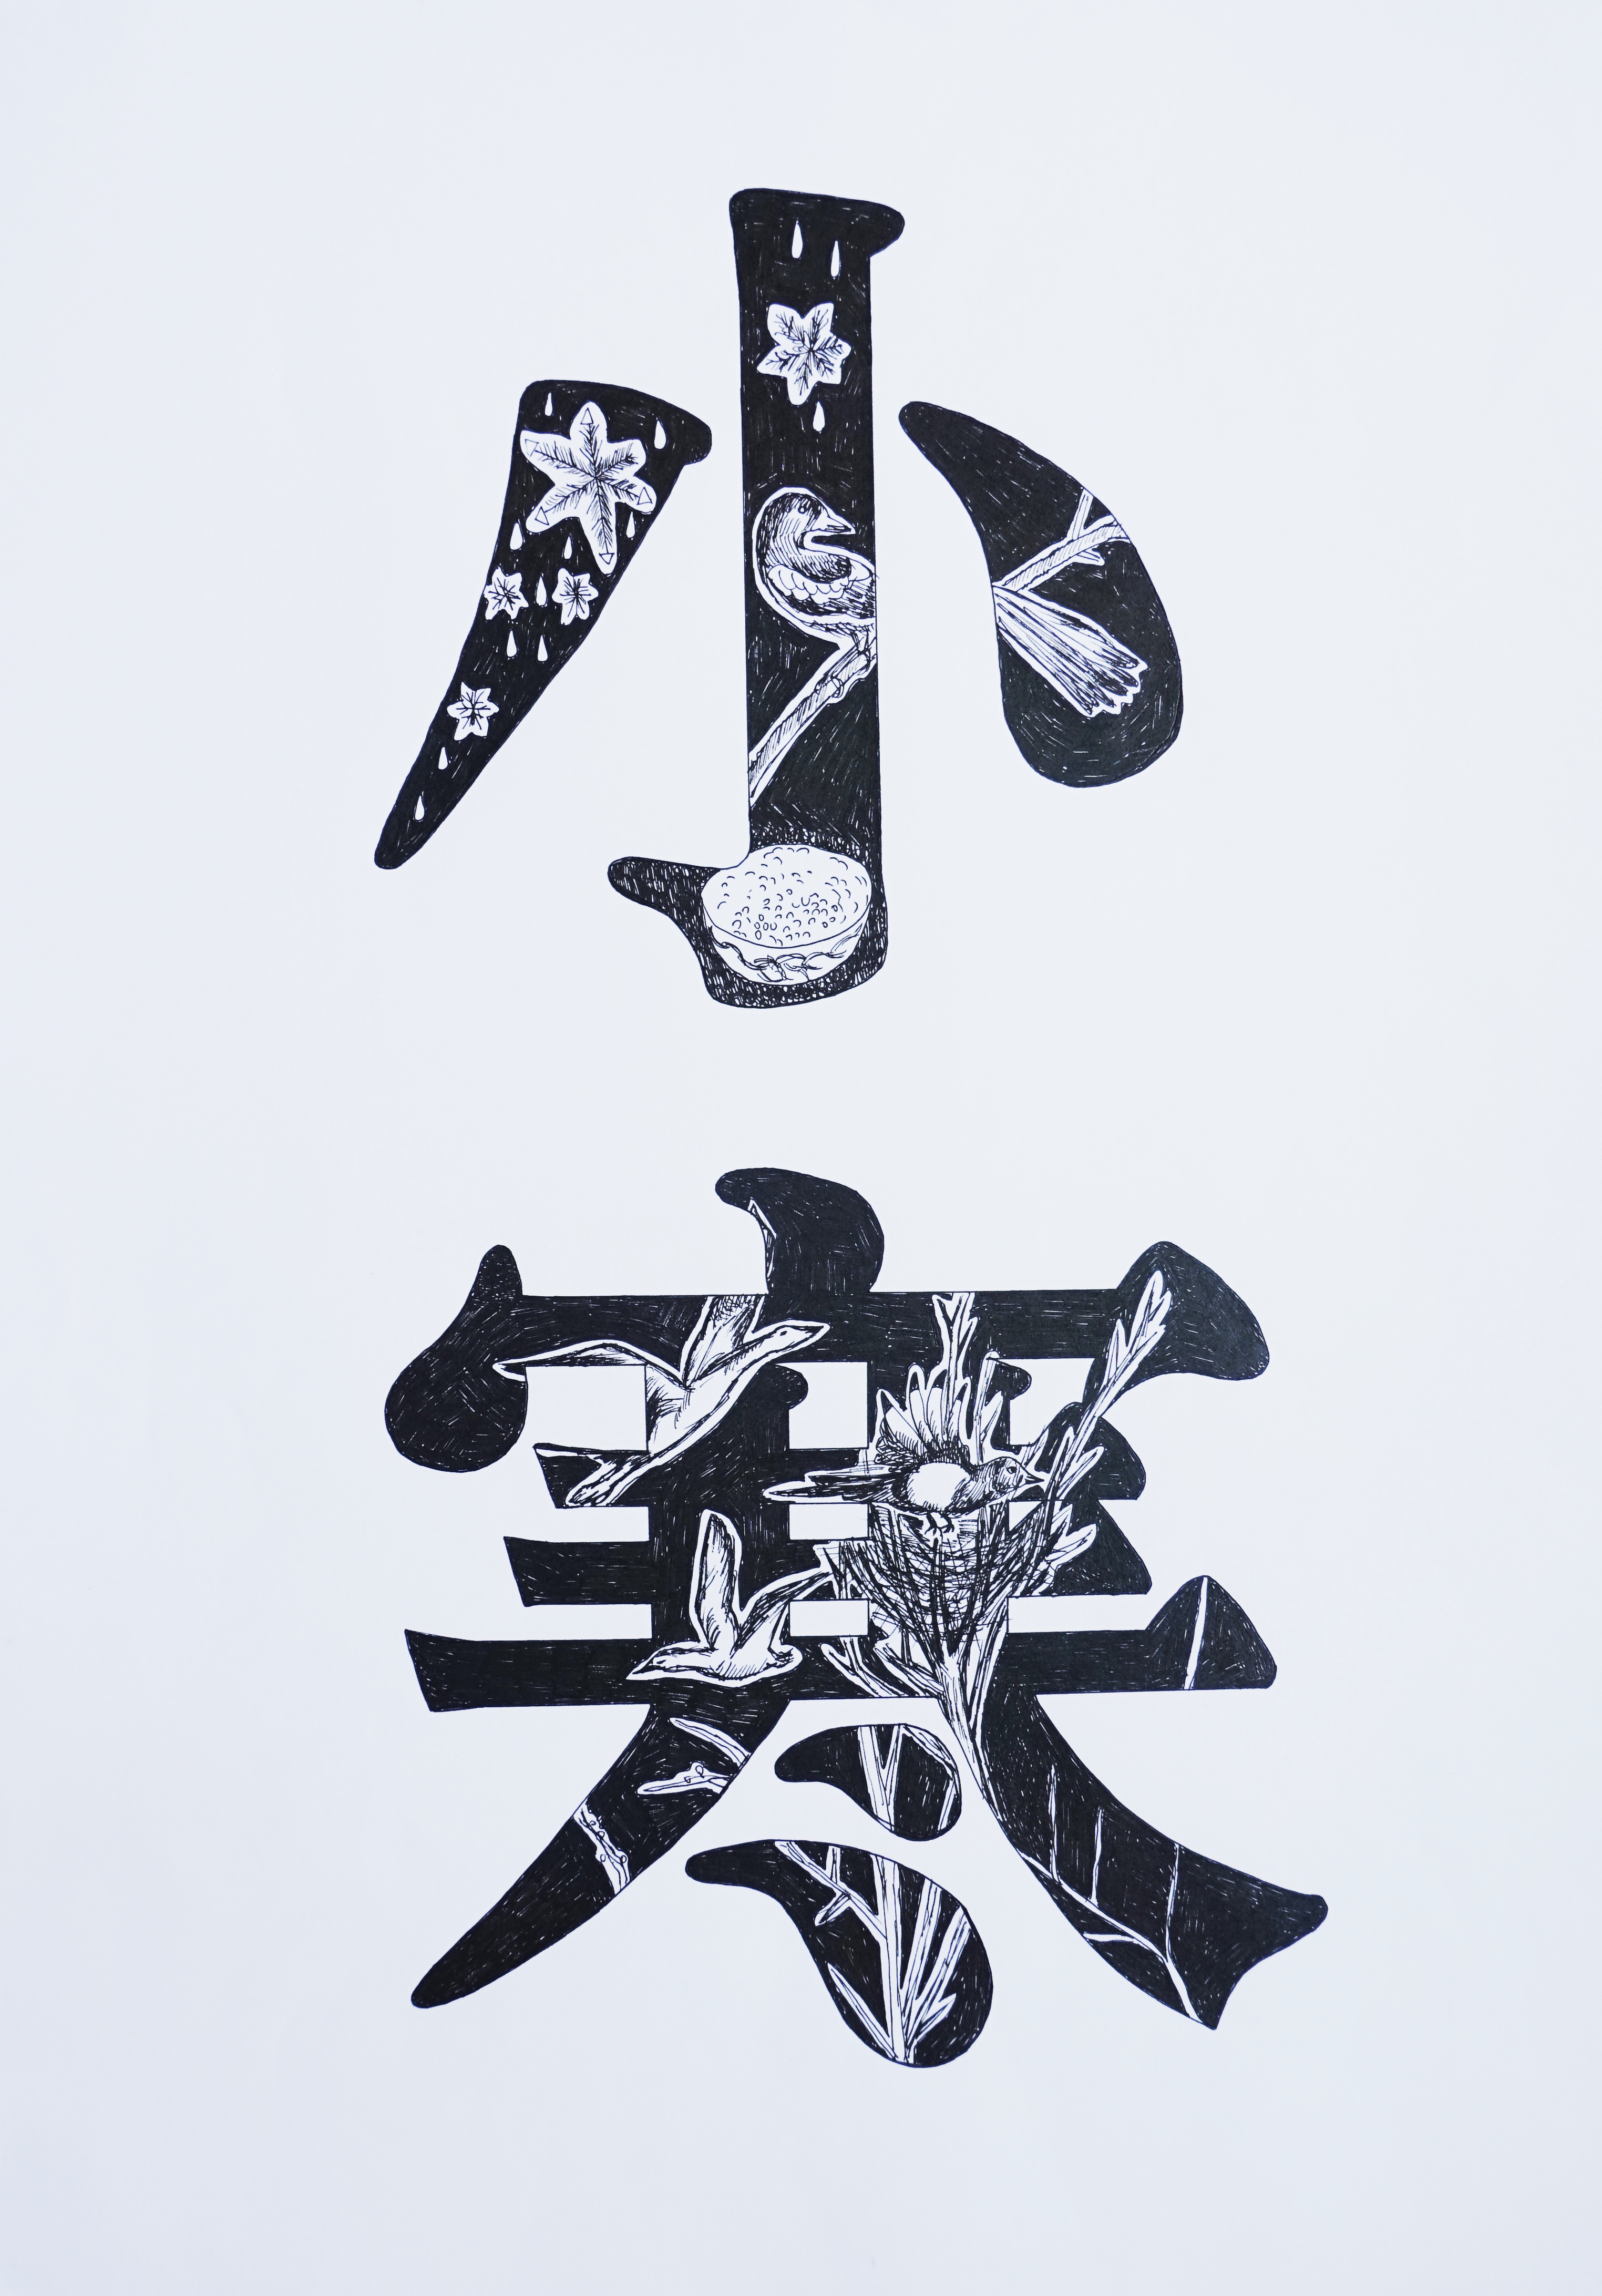 二十四节气字体装饰设计(手绘)2020a&